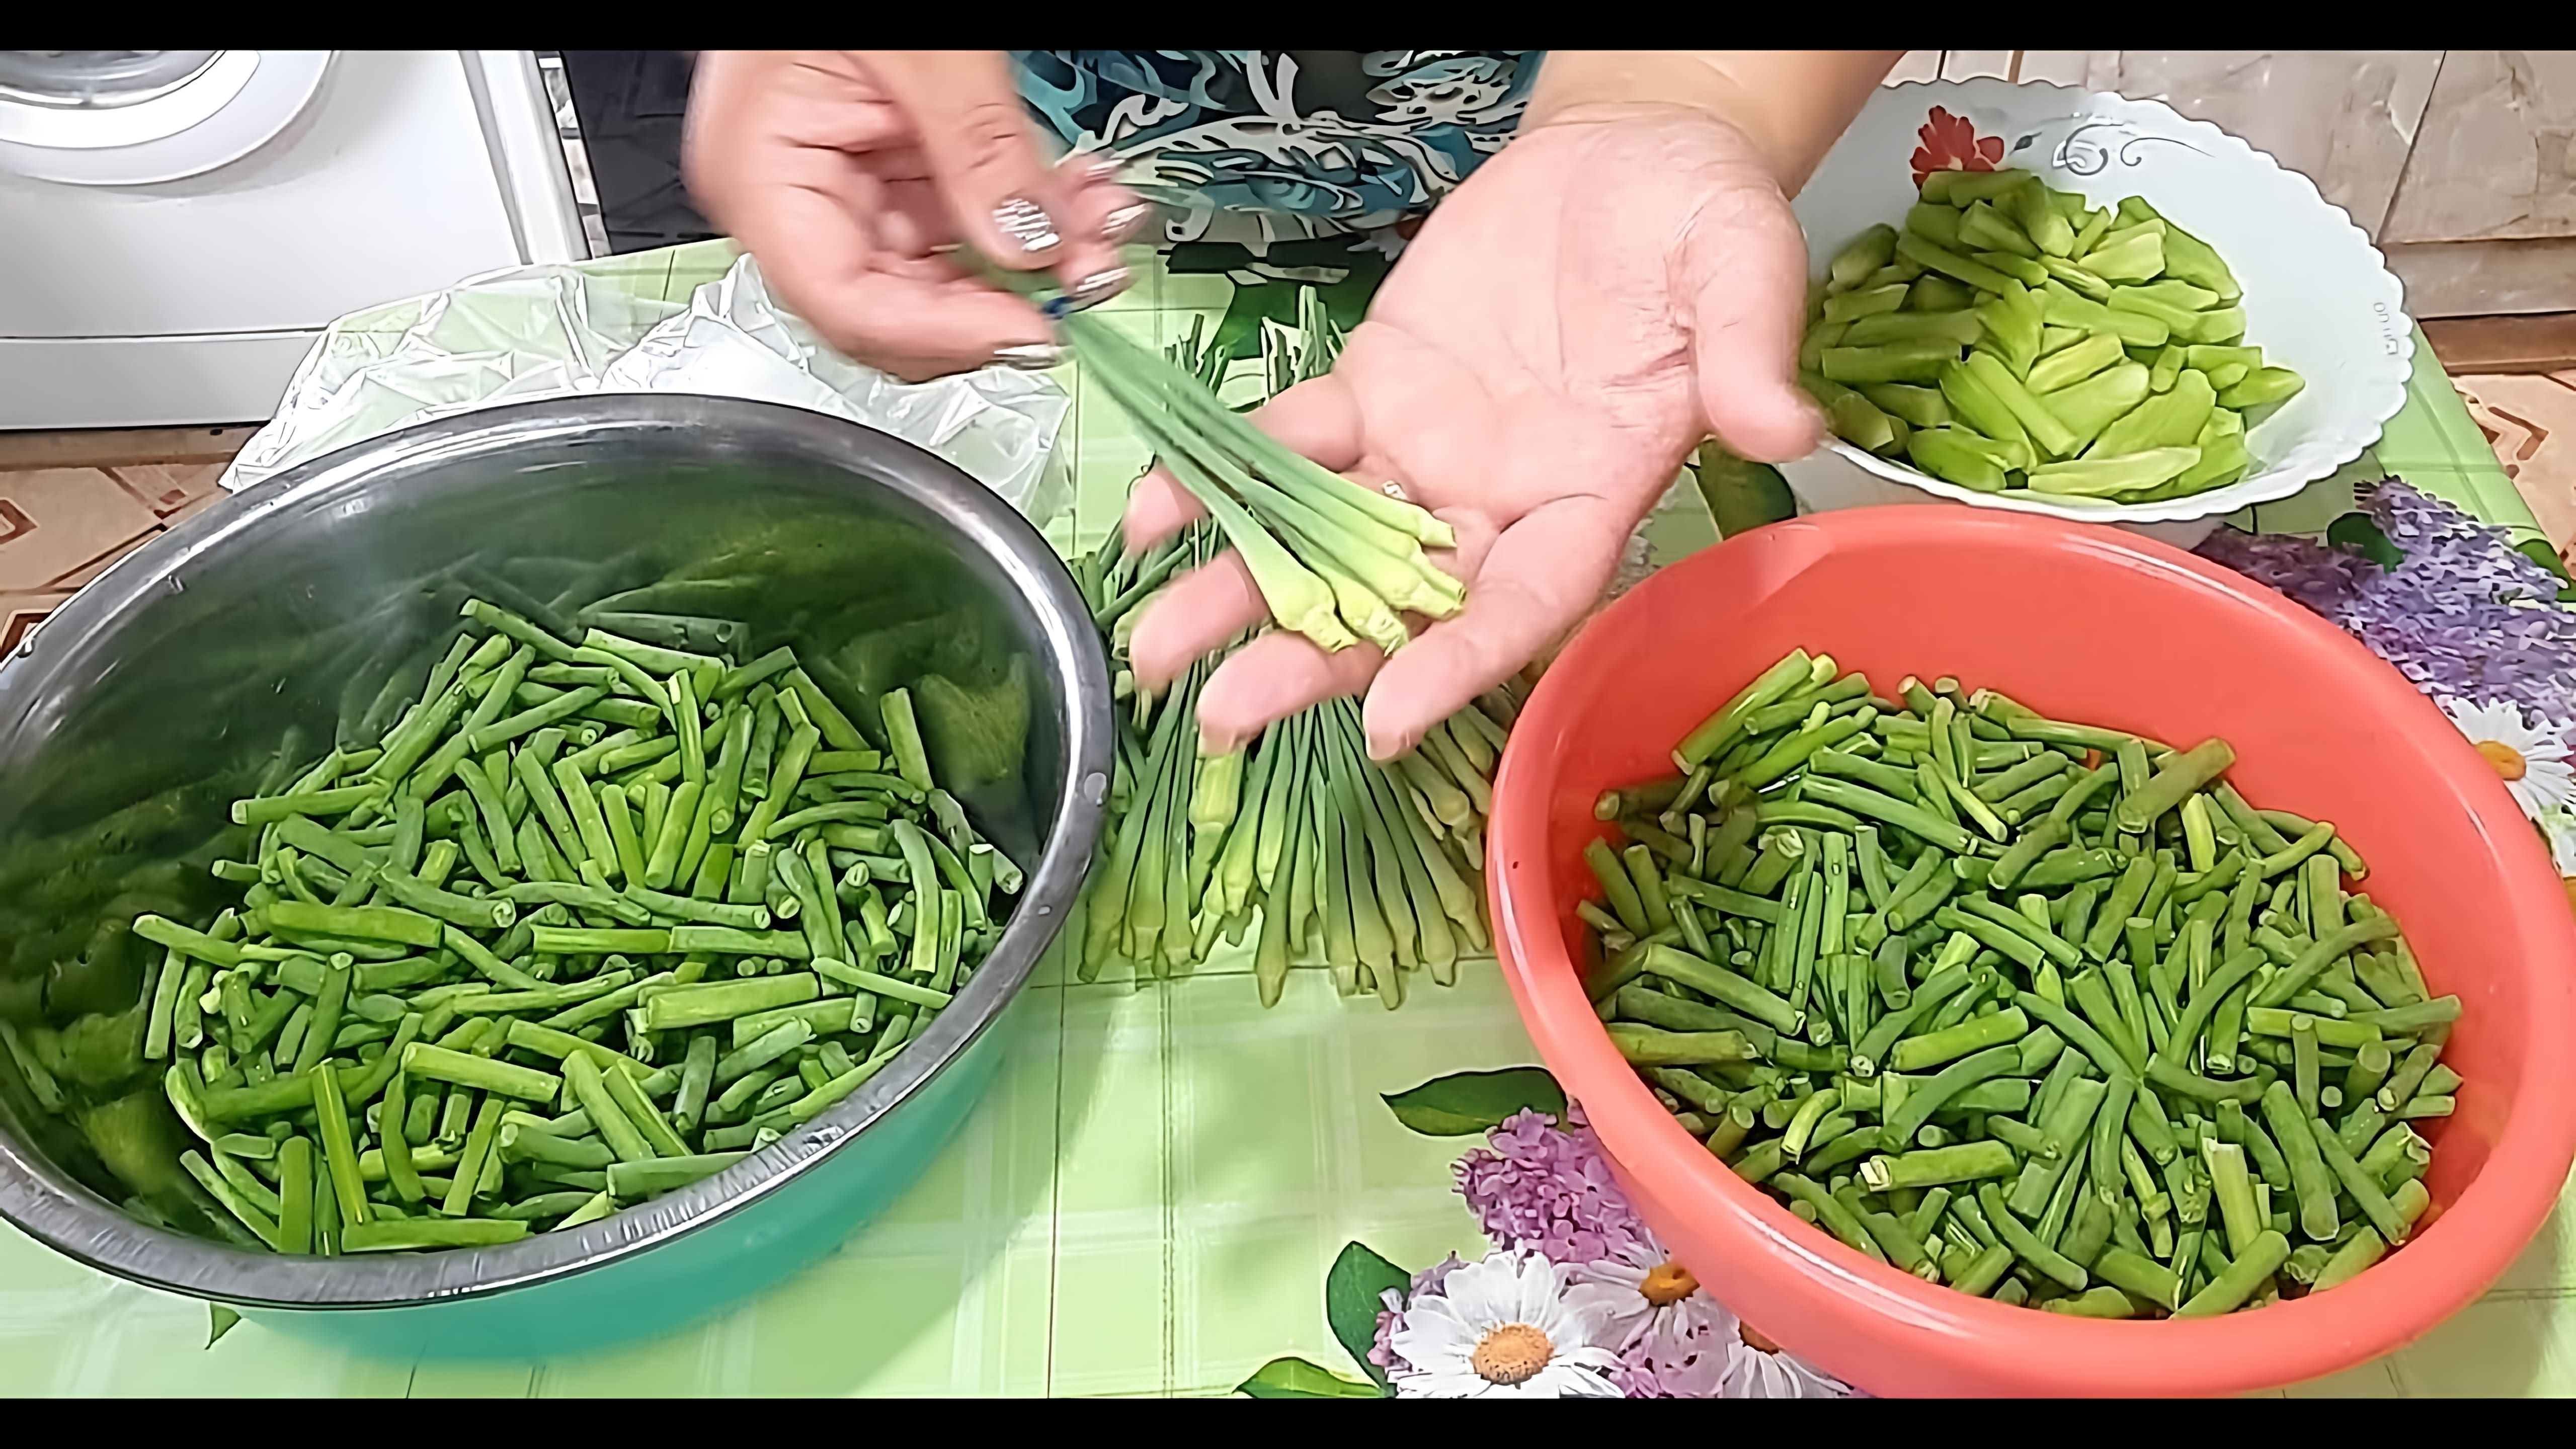 Видео демонстрирует три рецепта по сохранению чесночных стрелок и других овощей на зиму с использованием методов маринования и пасты